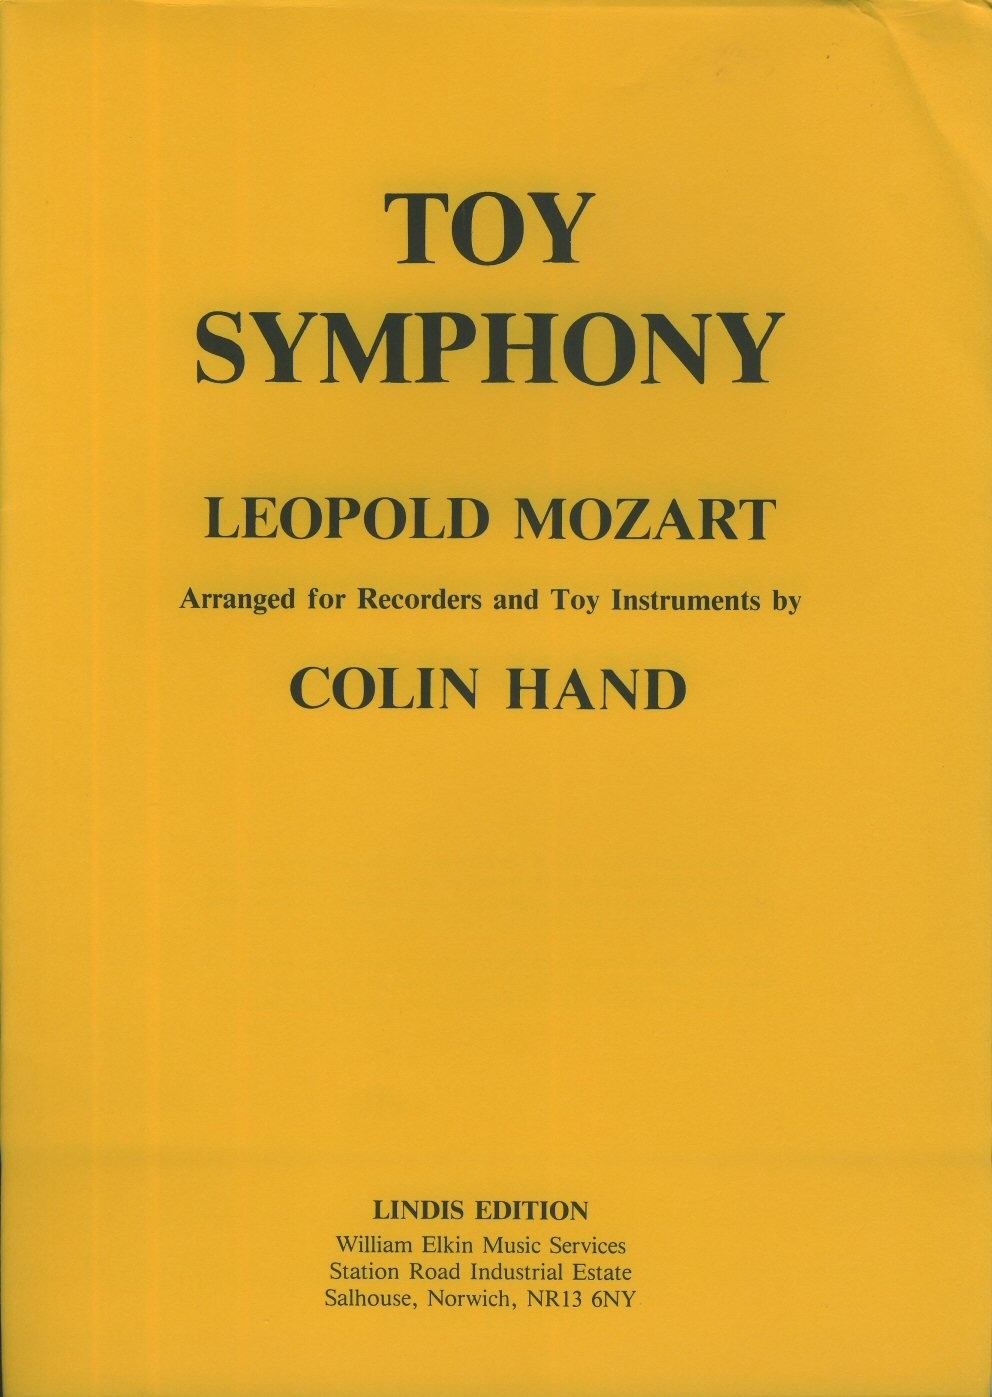 symphony toy